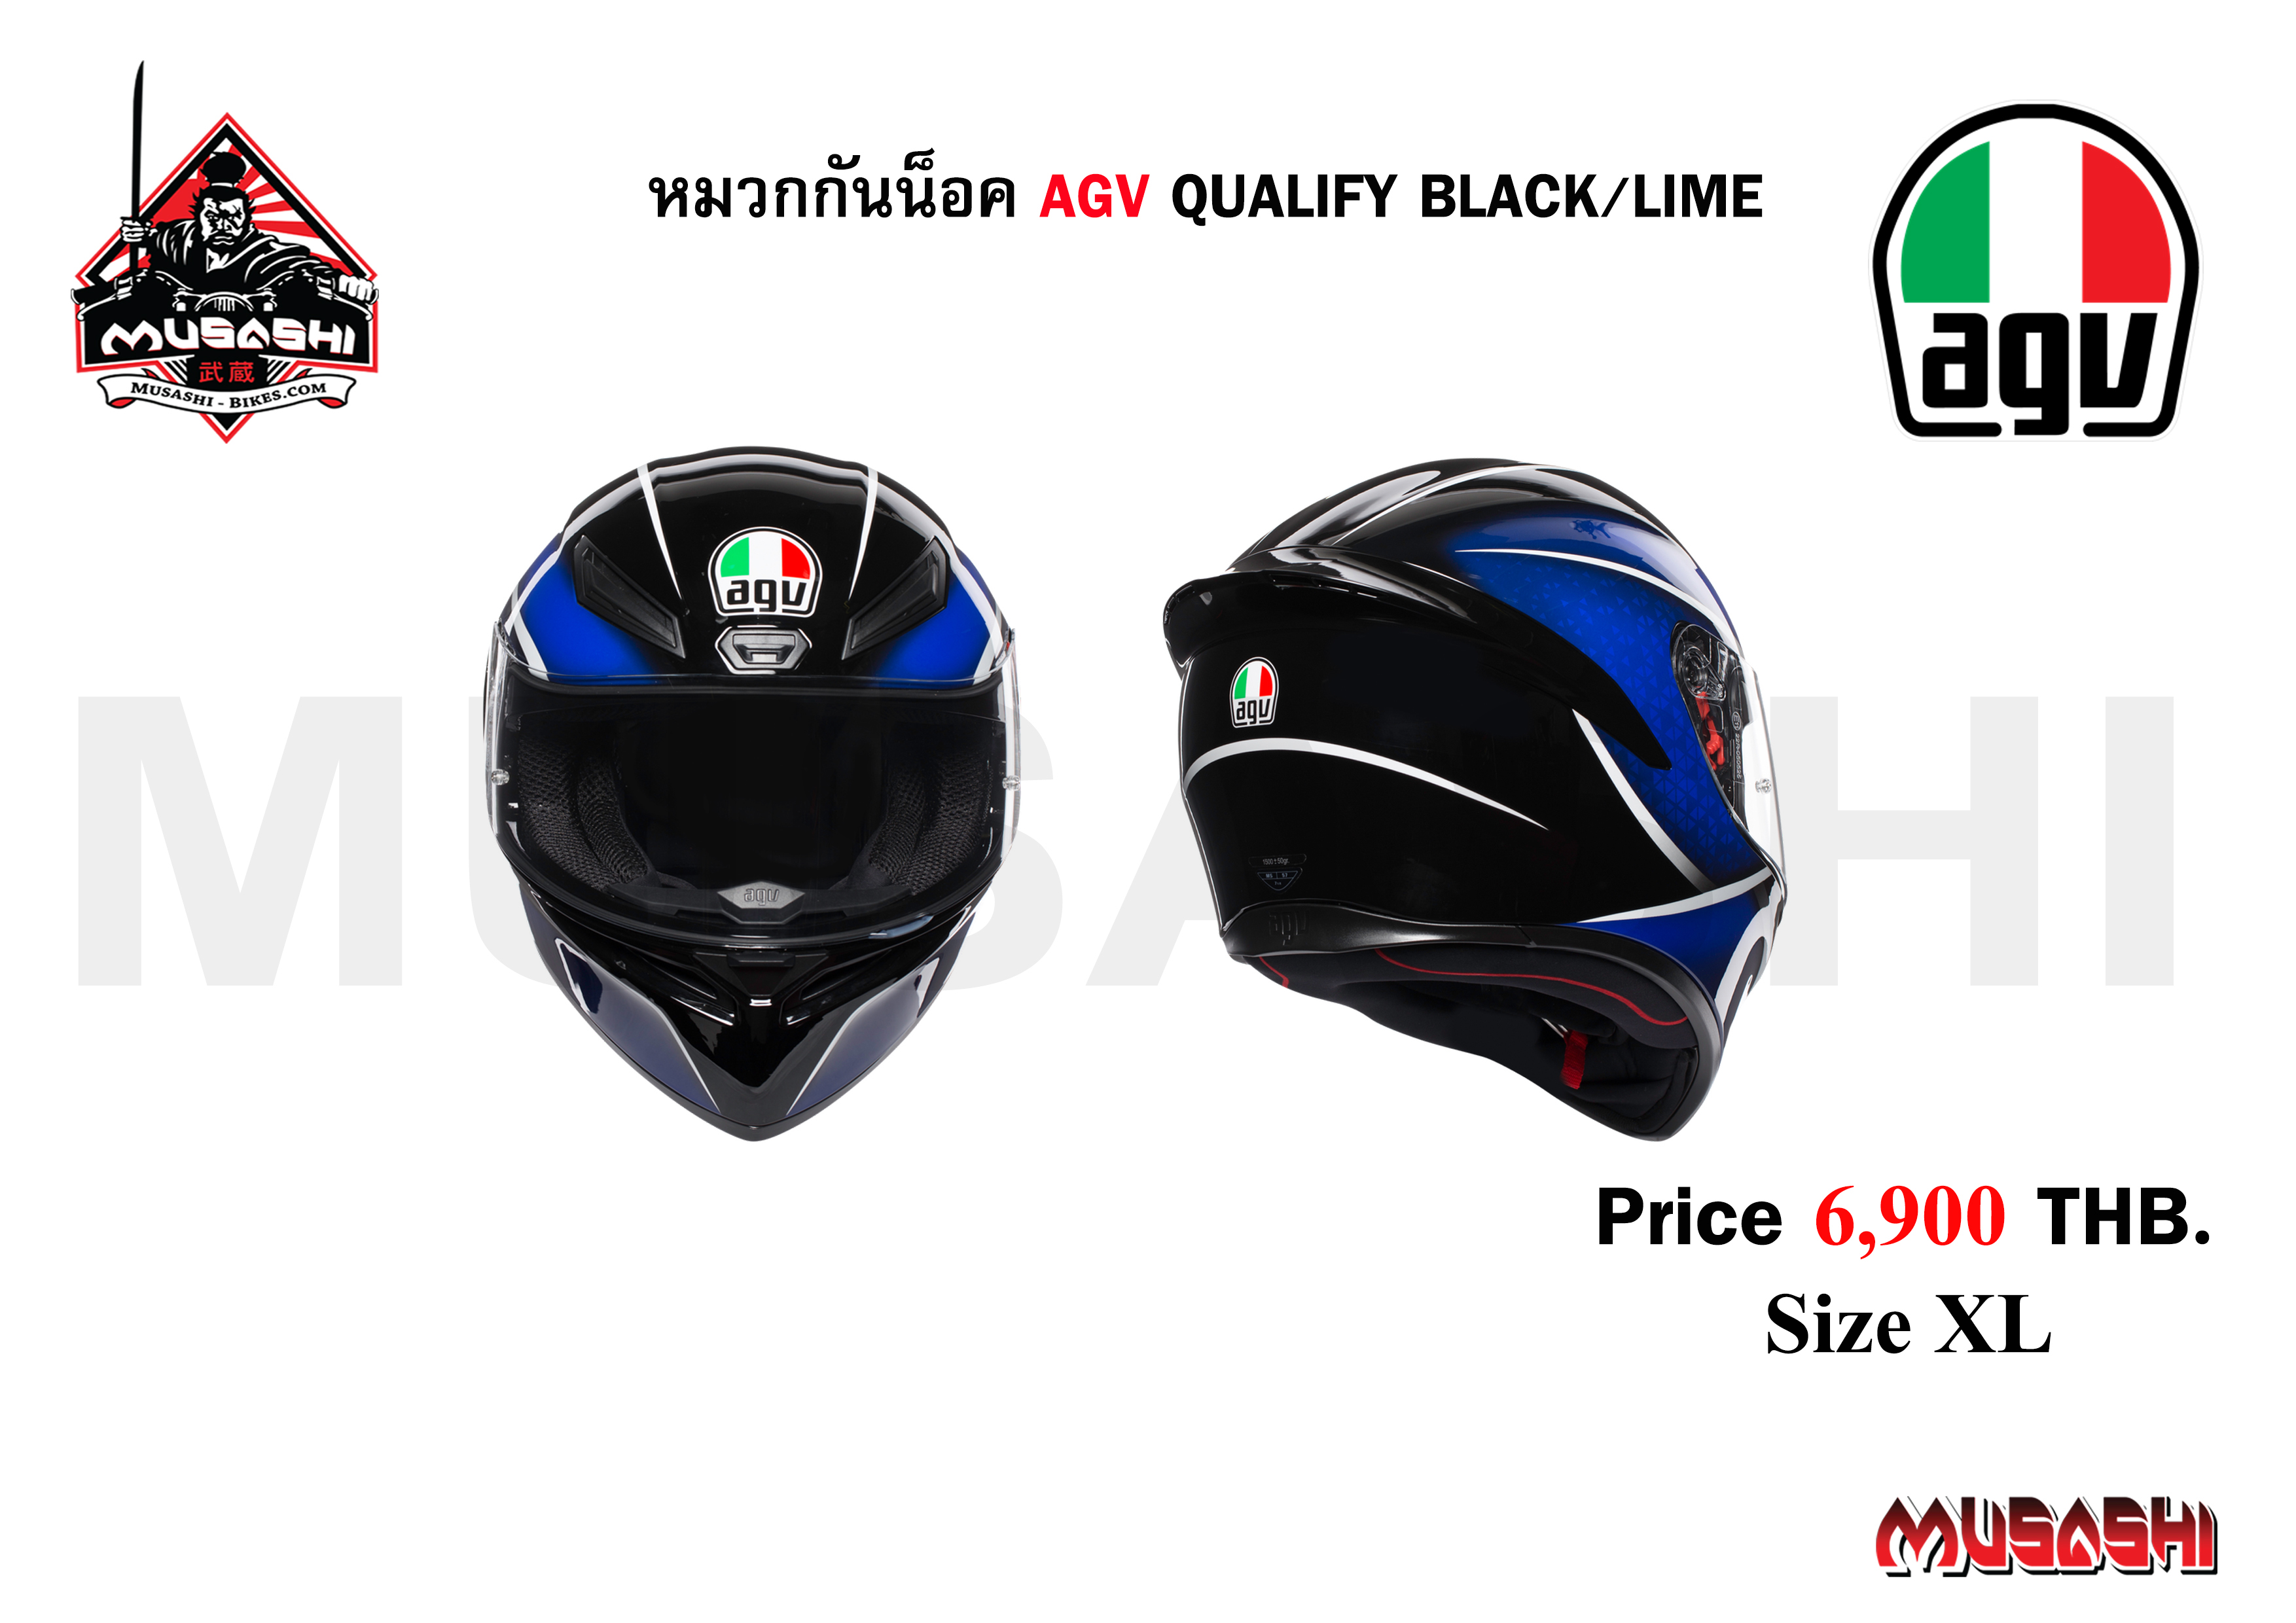 AGV Qualify Black / Lime